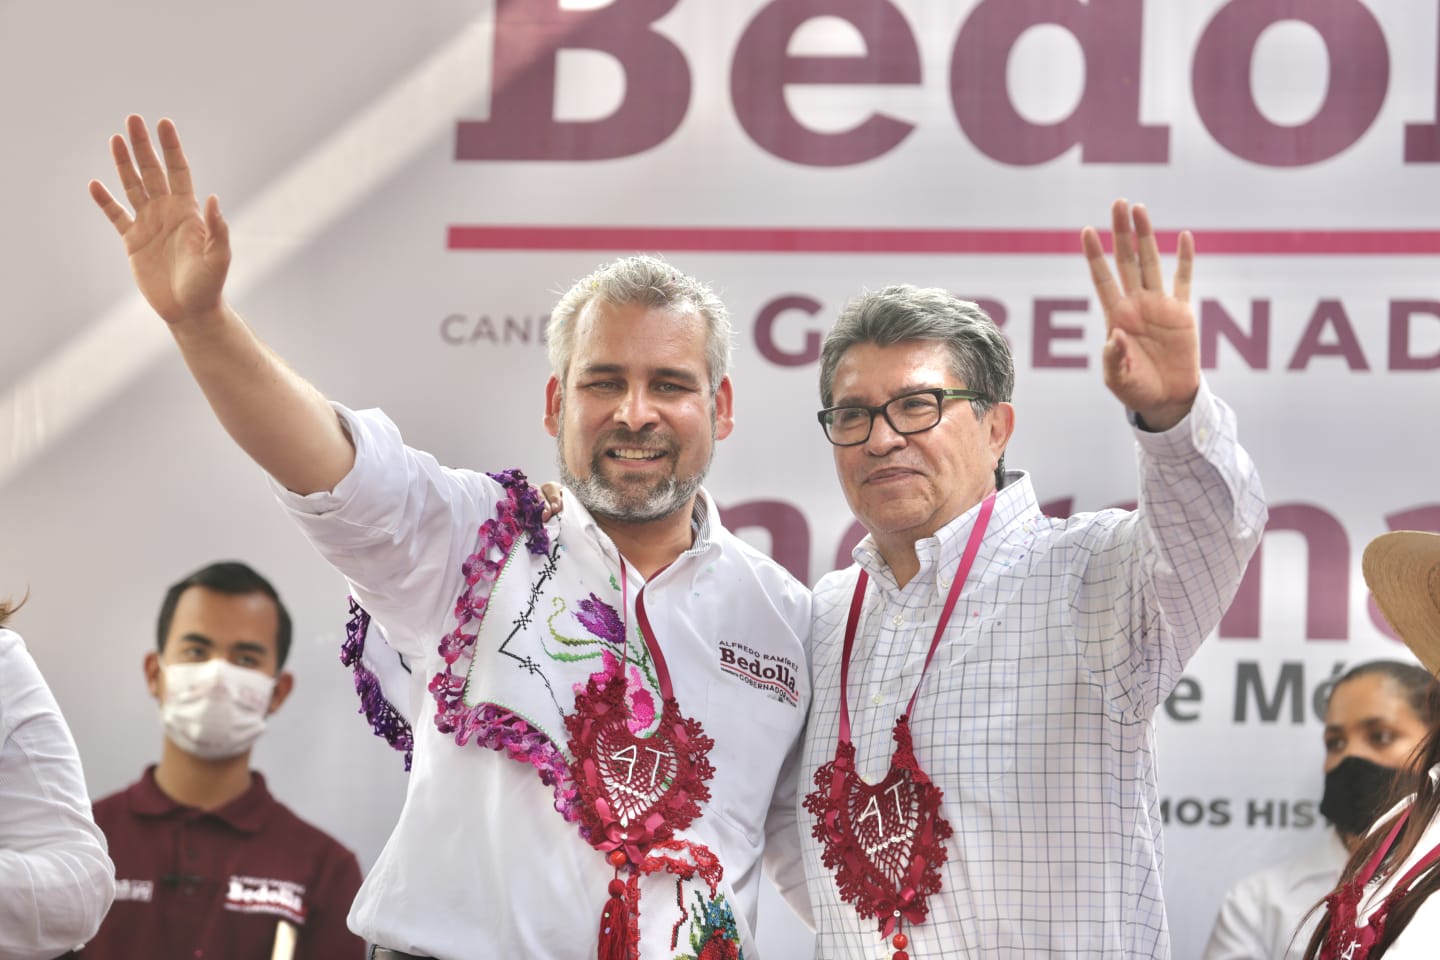 Ricardo Monreal acompaña a Alfredo Bedolla “en Michoacán soplan vientos de esperanza”